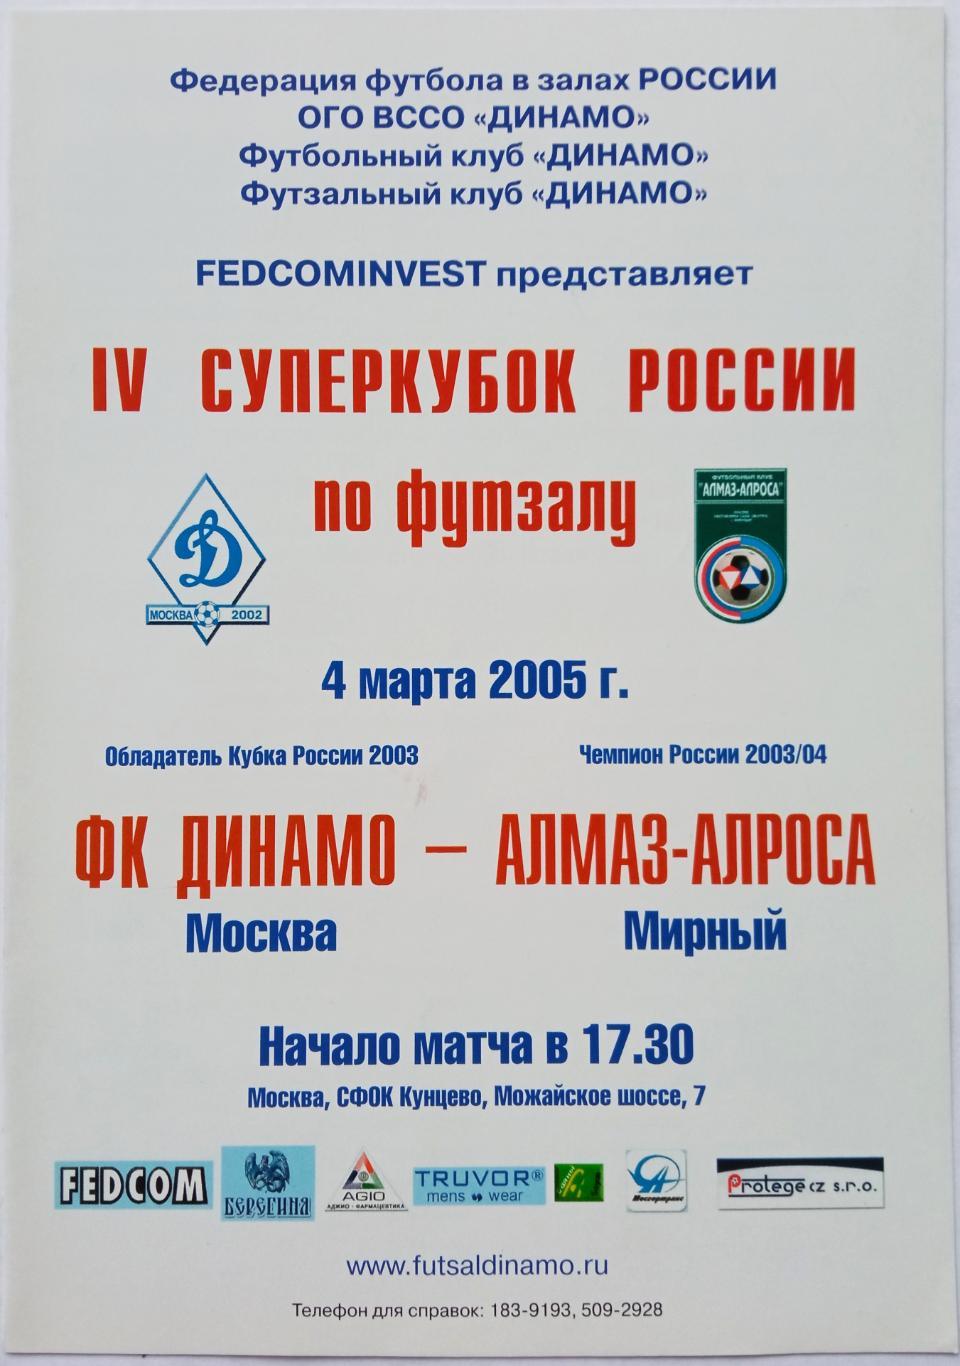 Динамо Москва – Алмаз-Алроса Мирный 04.03.2005